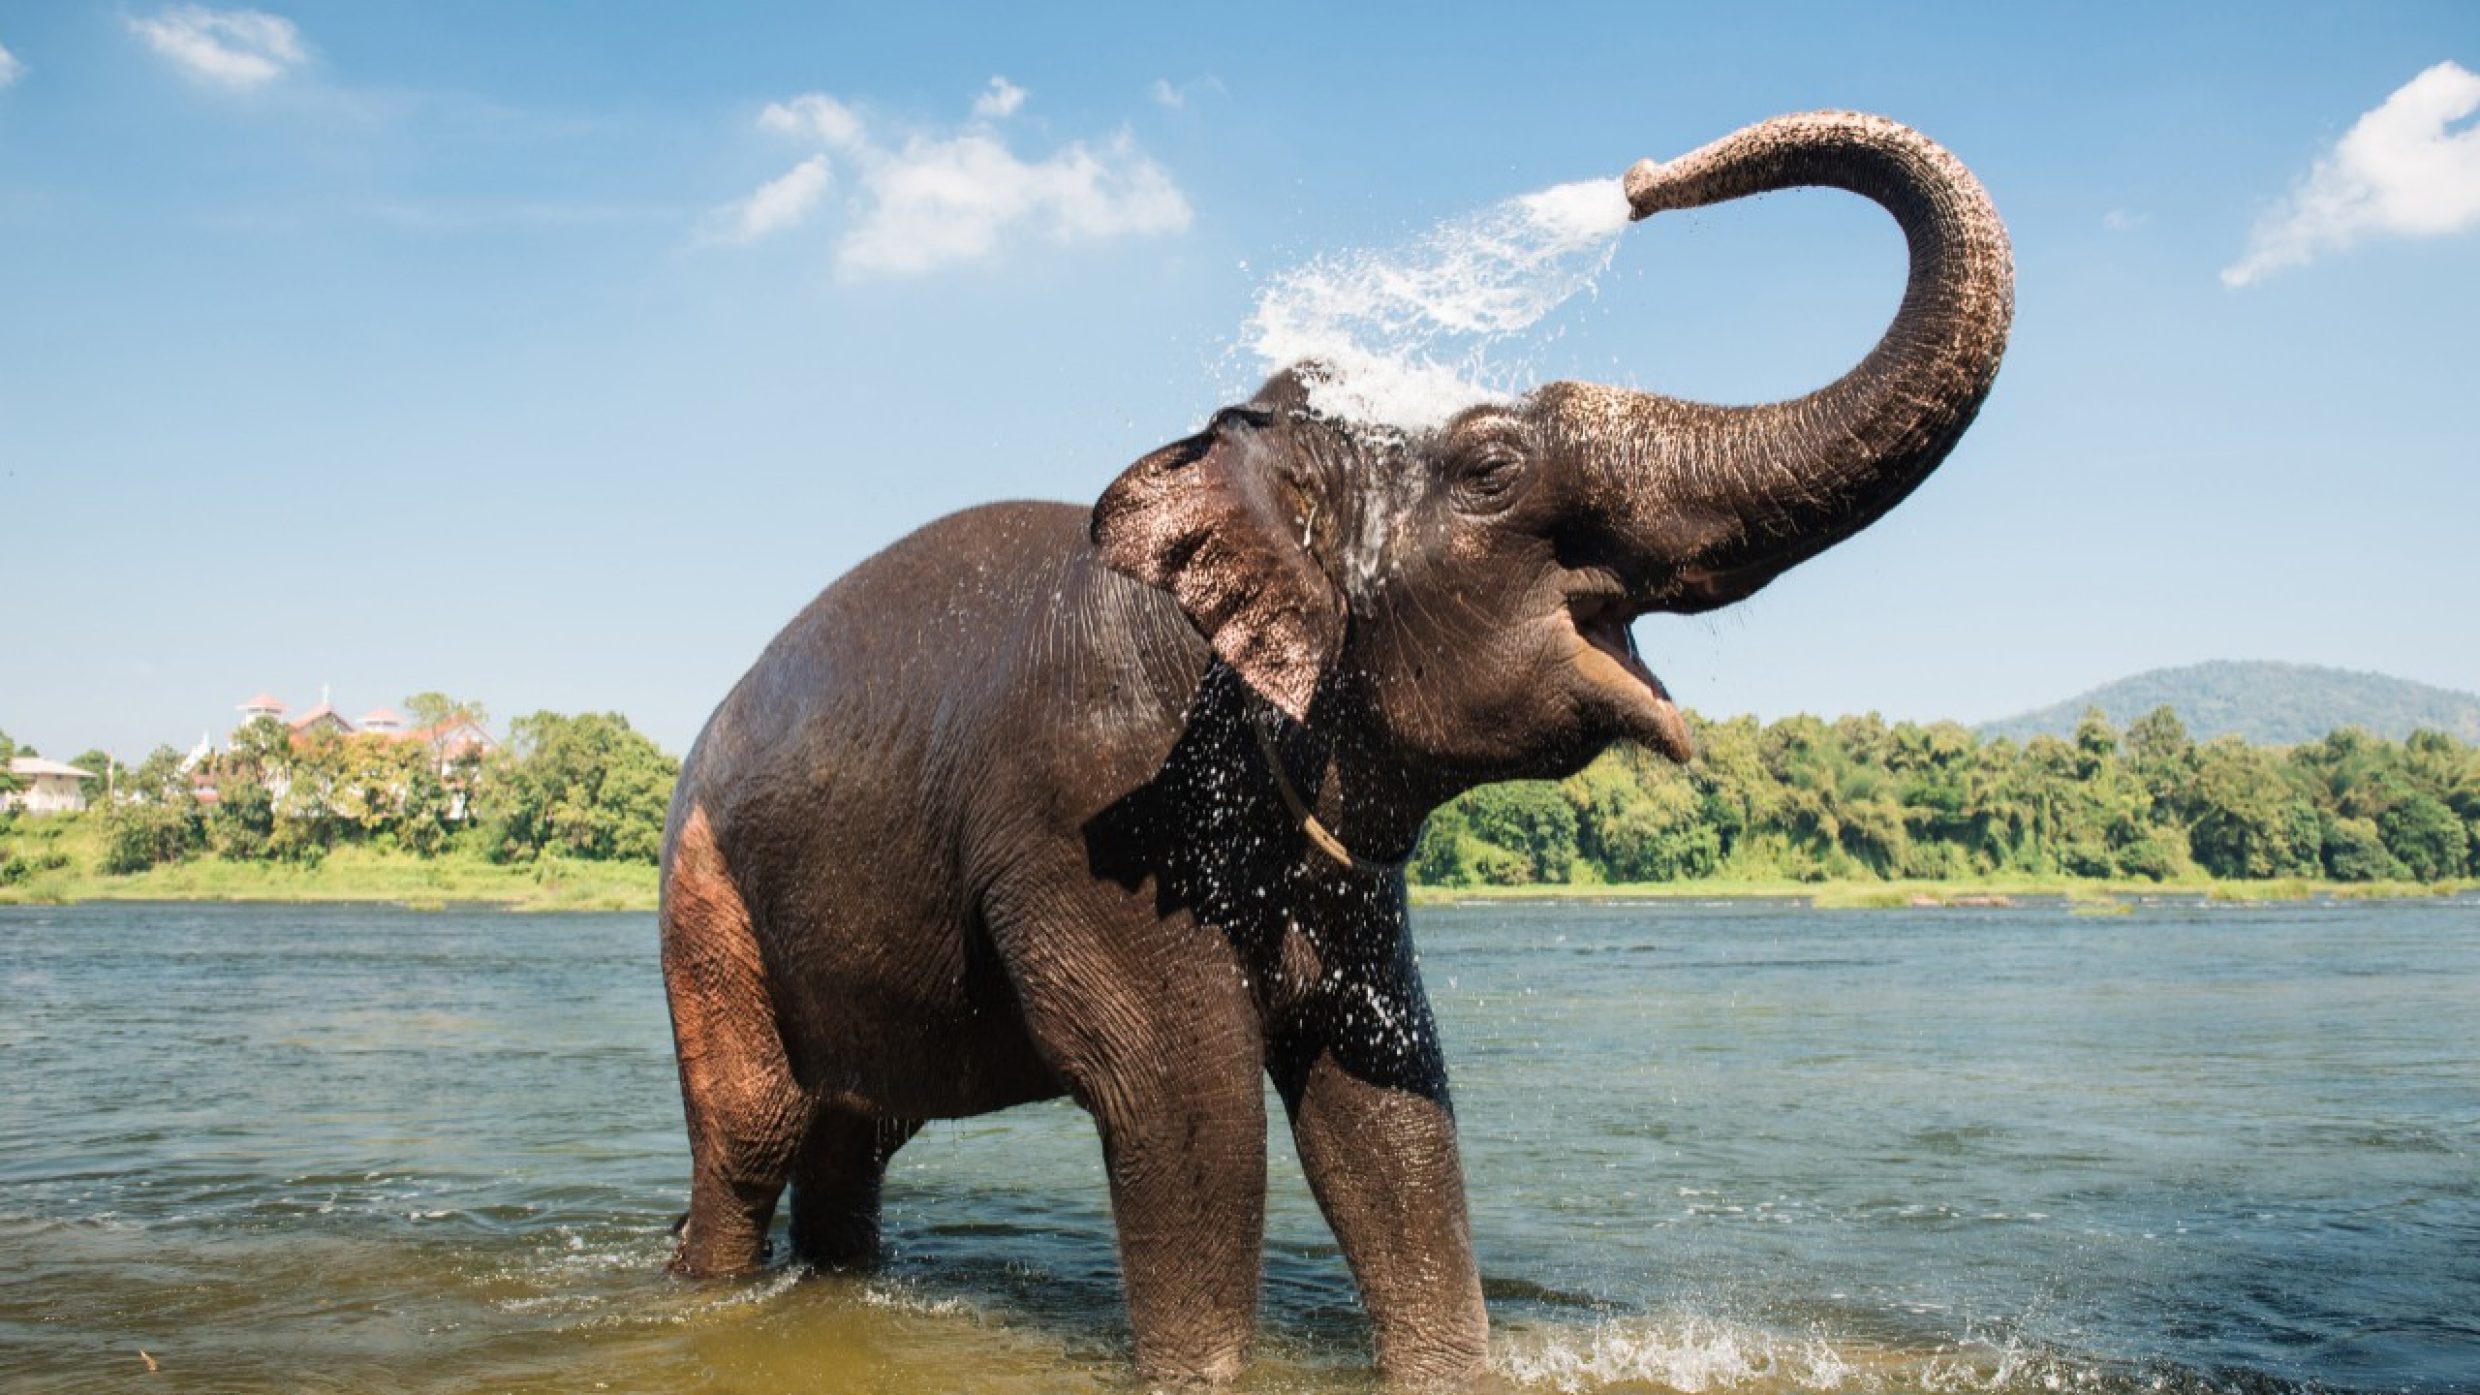 Von Ausnahmen abgesehen gilt: Tiere mit grösserer Körpermasse haben auch eine höhere Lebenserwartung. Mit bis zu 86 Jahren gehören die asiatischen Elefanten zu den ältesten an Land lebenden Säugetieren.